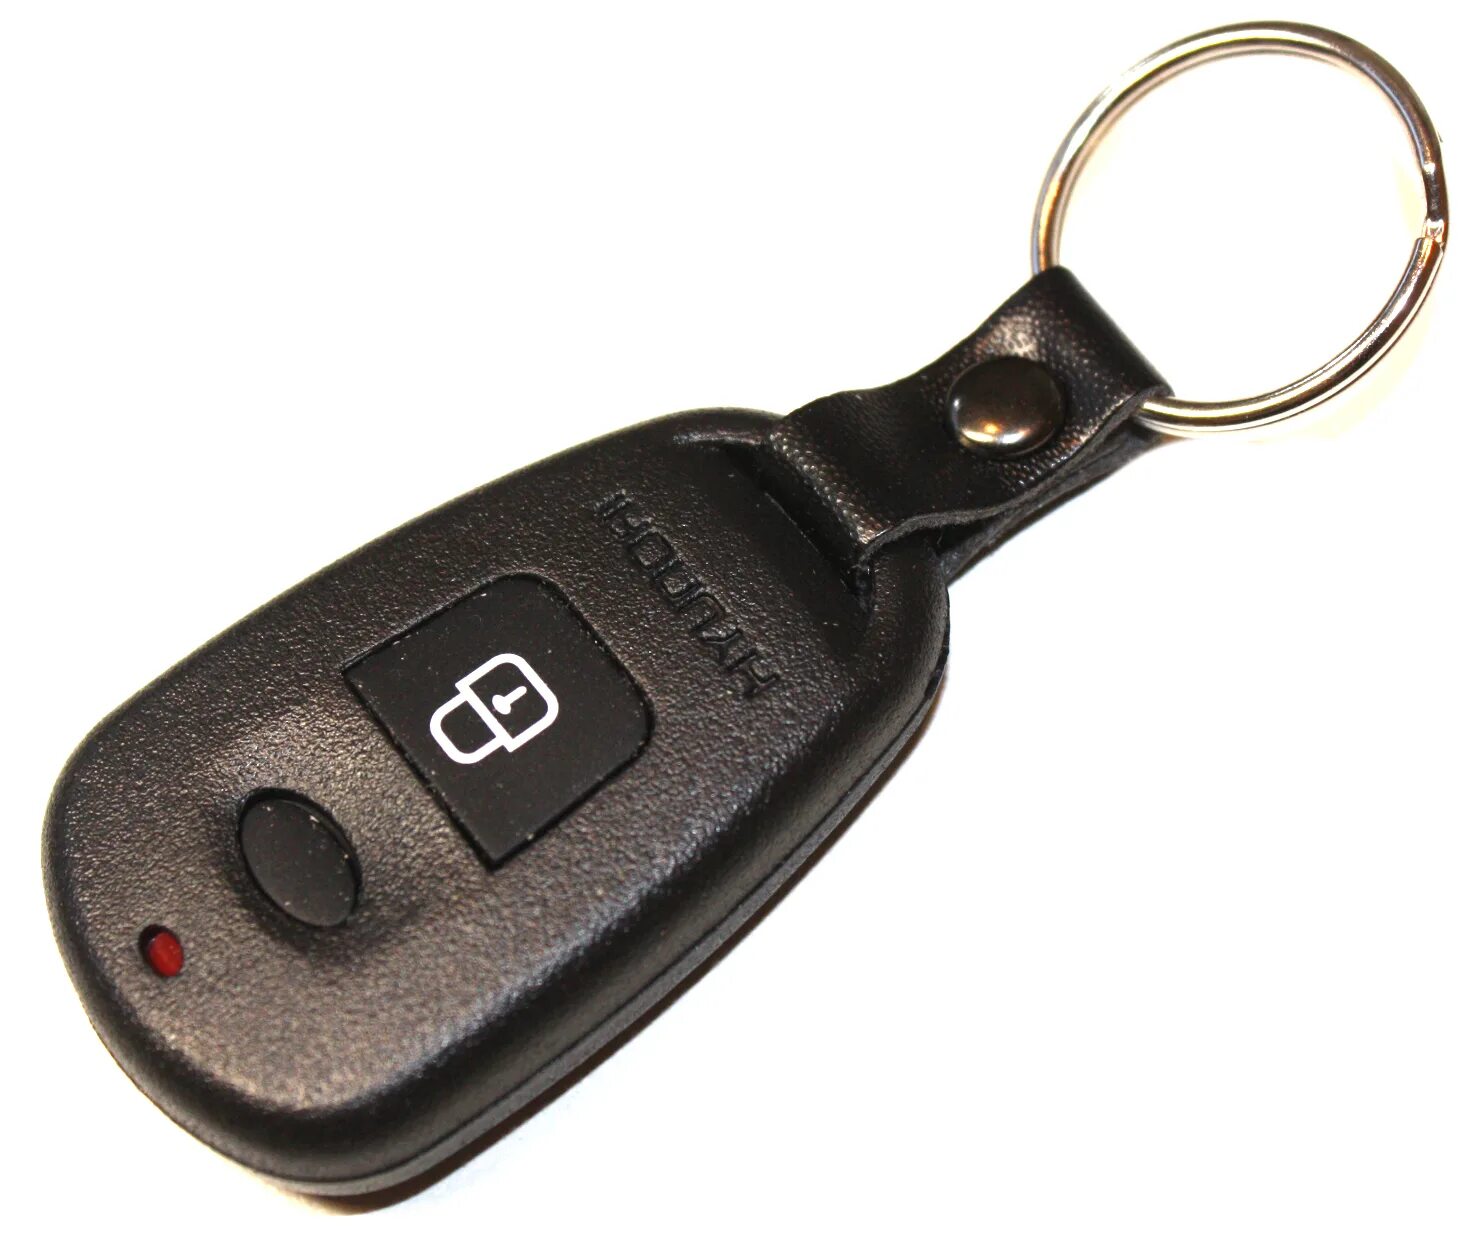 Машина пульт ключ. Дистанционный пульт Hyundai 433mhz. Grand Starex пульт ключ. Ключ пульт Хундай Солярис. Пульт штатной сигнализации Hyundai Accent.